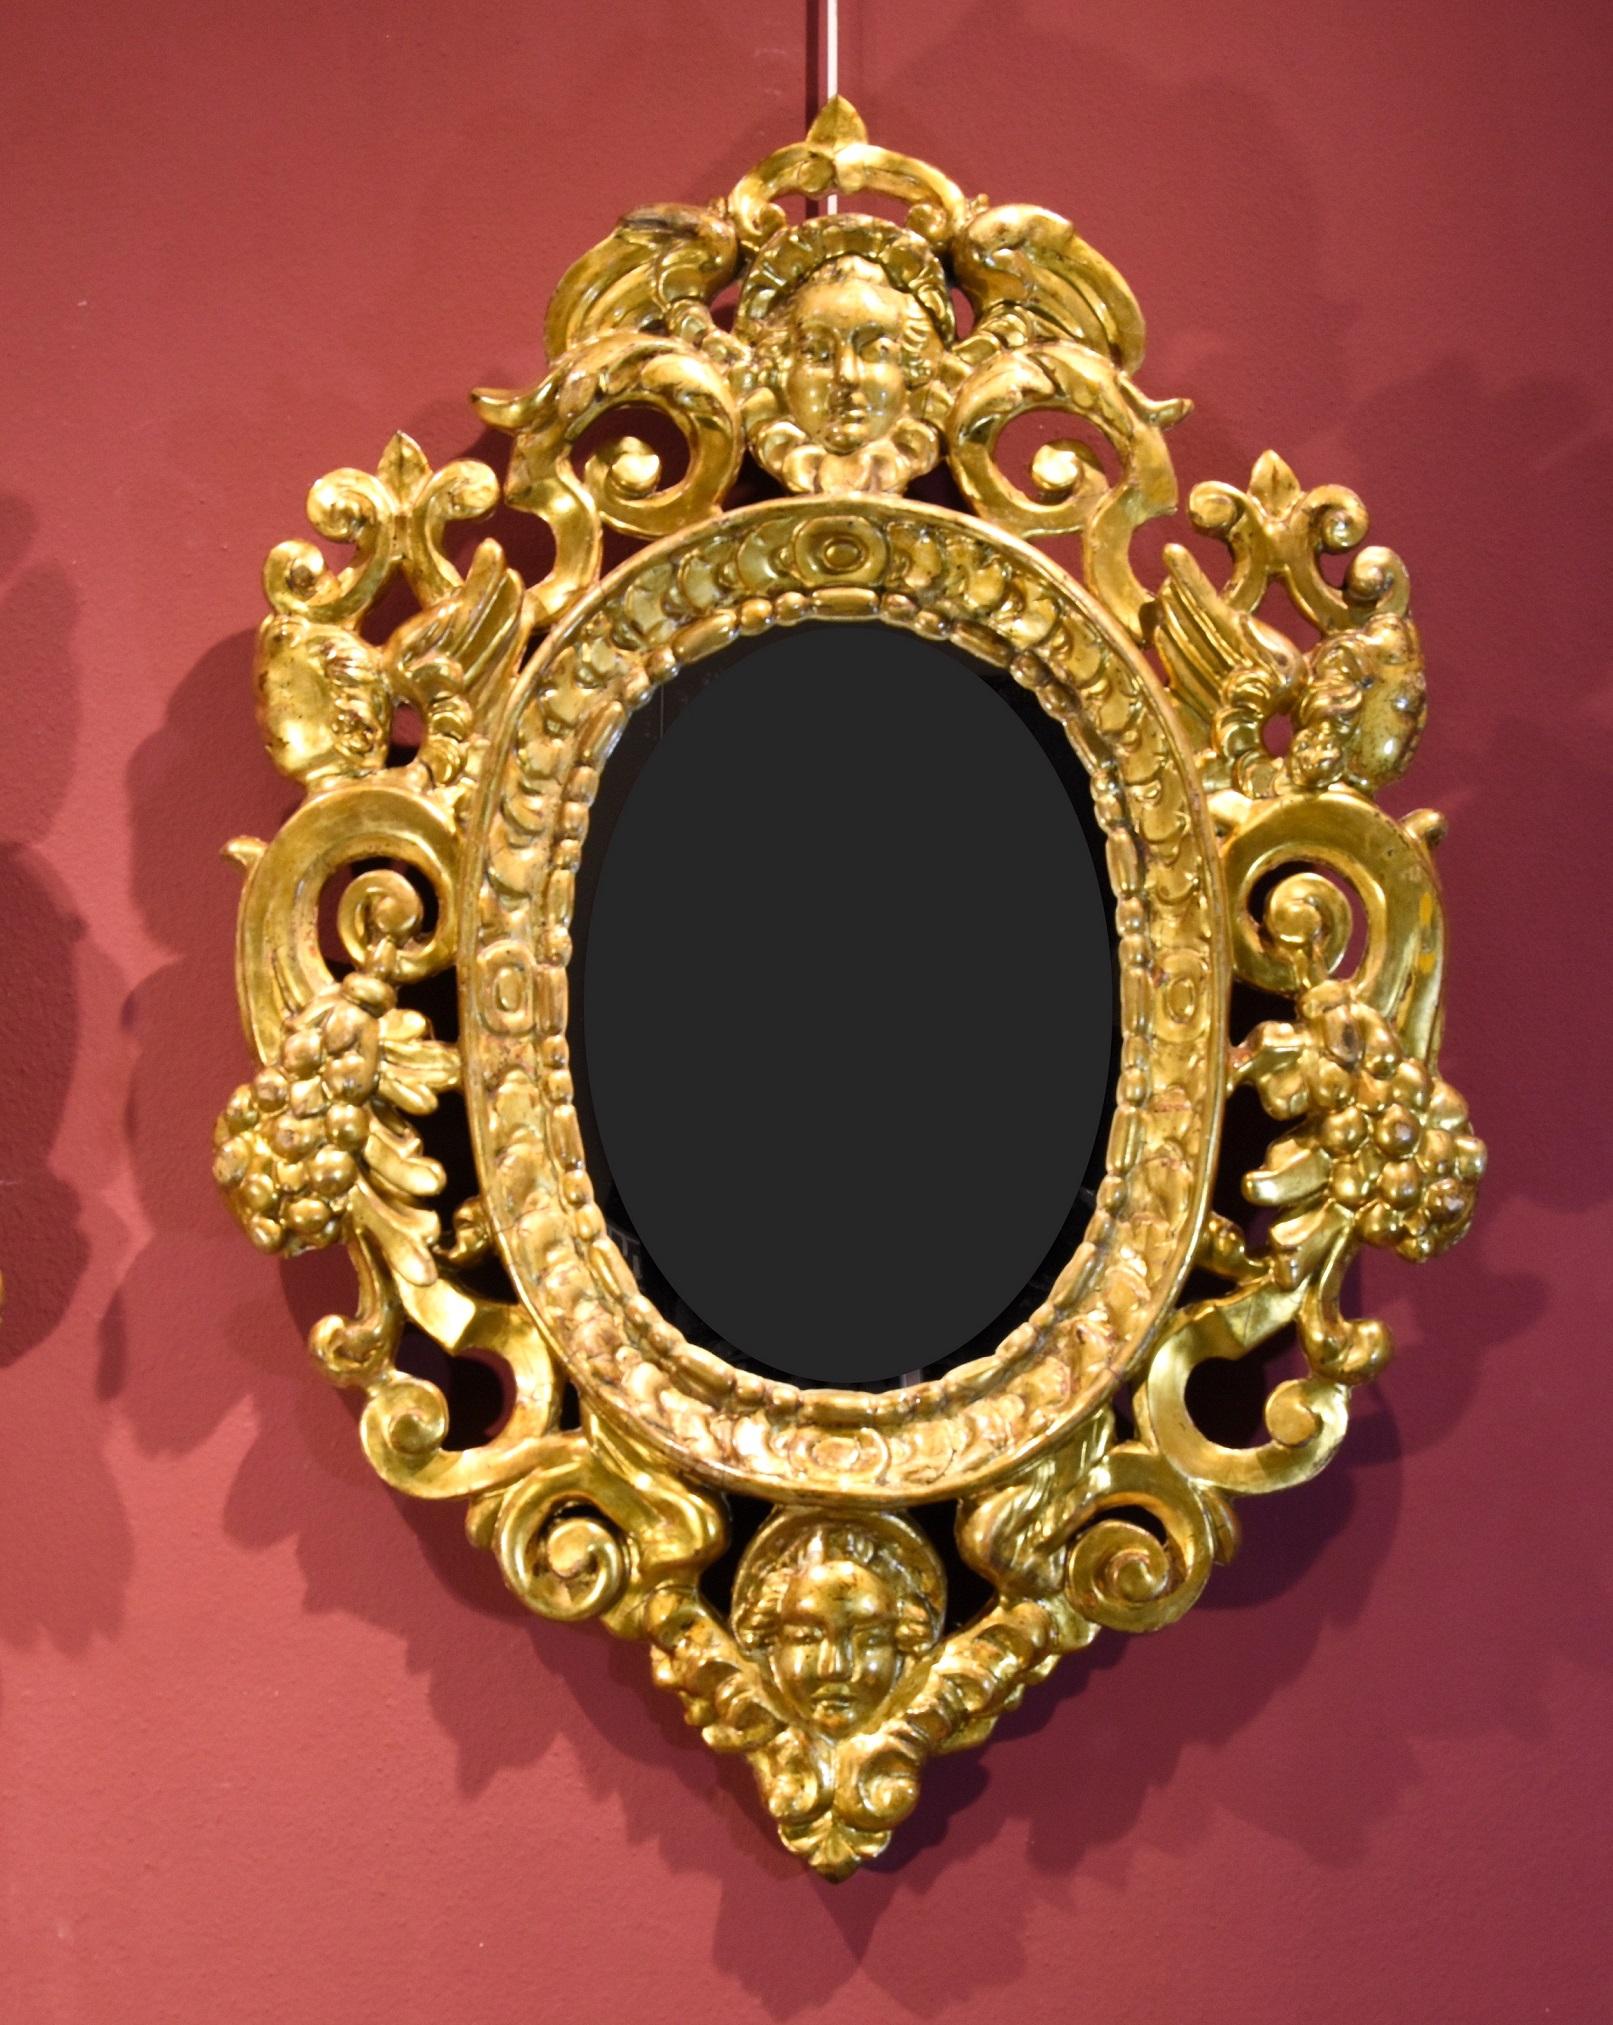 Paire d'armoires de toilette sculptées et dorées à la manière de Sansovino
Sculpteur vénitien (ou toscan) actif au 18e siècle

Bois sculpté et doré
Dimensions totales du cadre : 86 x 60 cm. /Dimensions intérieures : 40 x 29 cm.

Cette précieuse